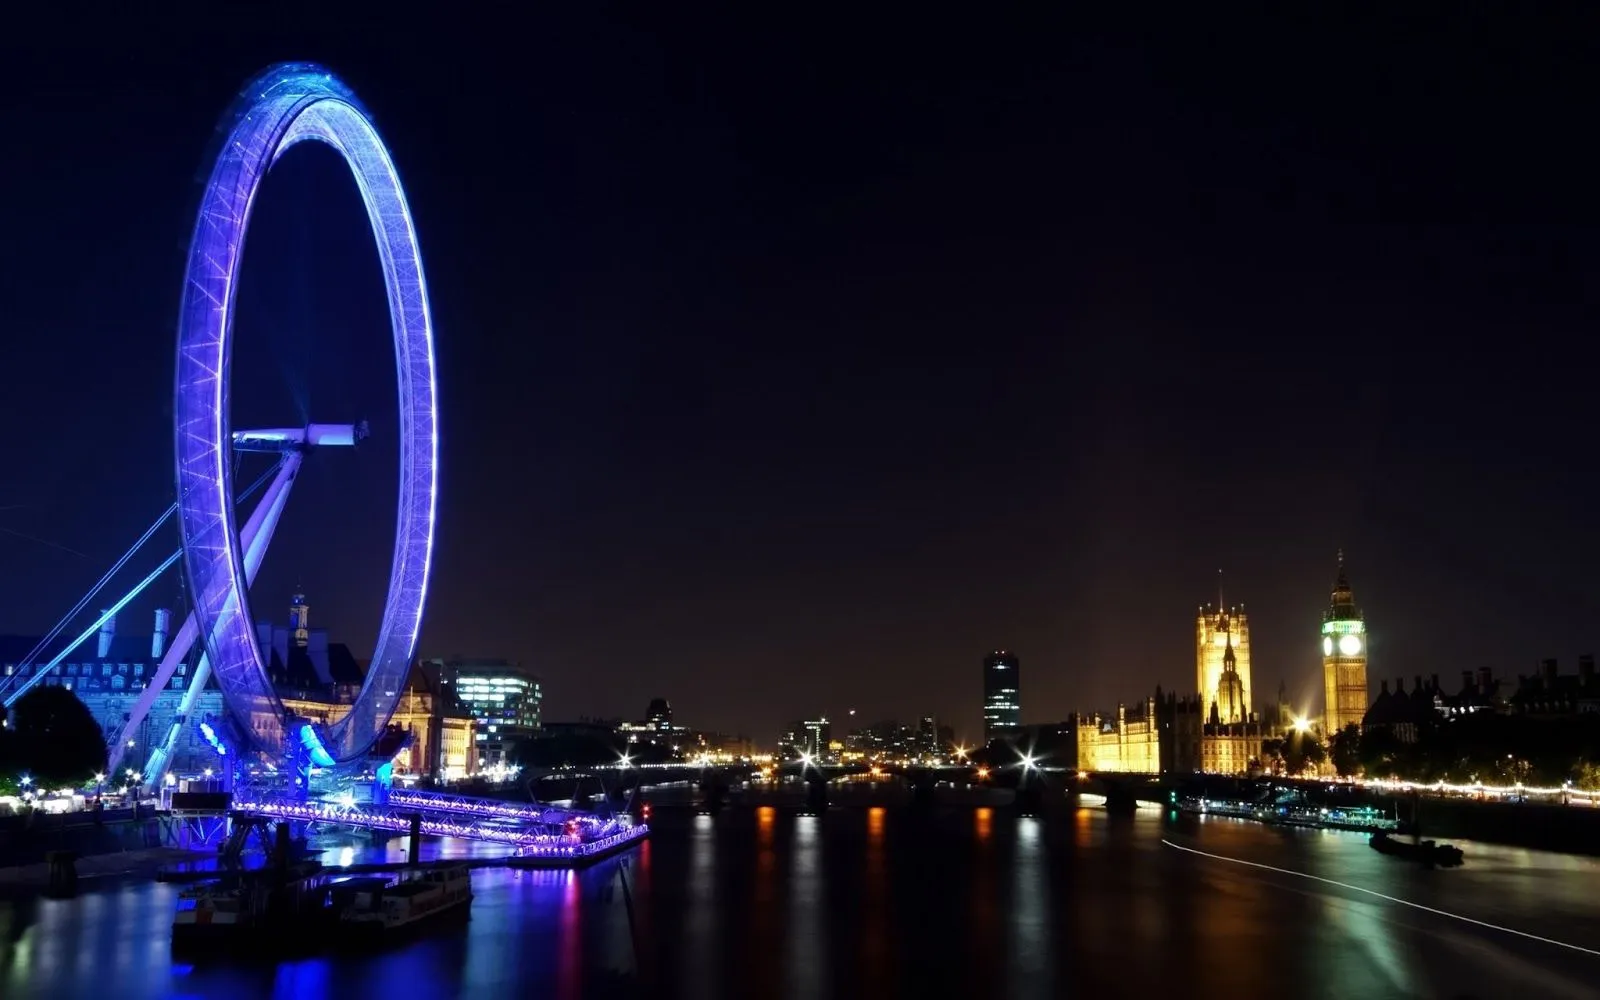 Fotos de La Ciudad de Londres en la Noche | Fotos e Imágenes en ...